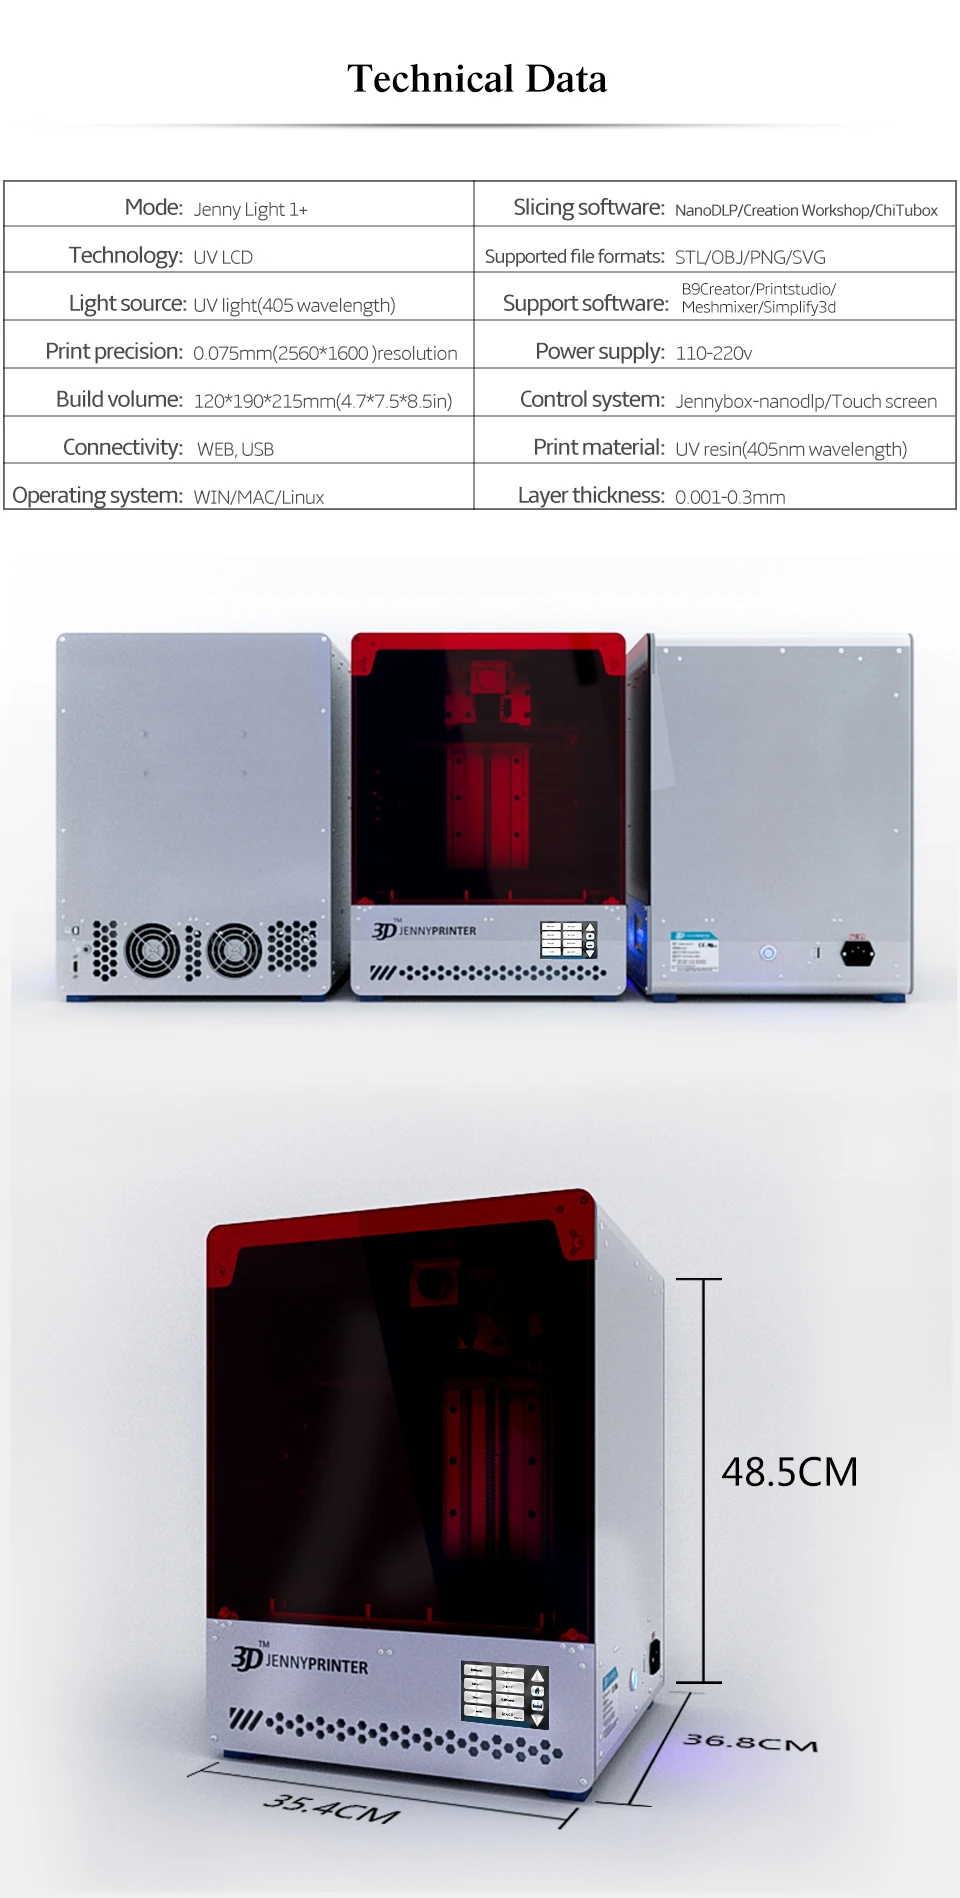 printer принтер lightlight1+ большой сенсорный экран УФ Смола lcd 3d Принтер вода моющийся Rein 500 мл